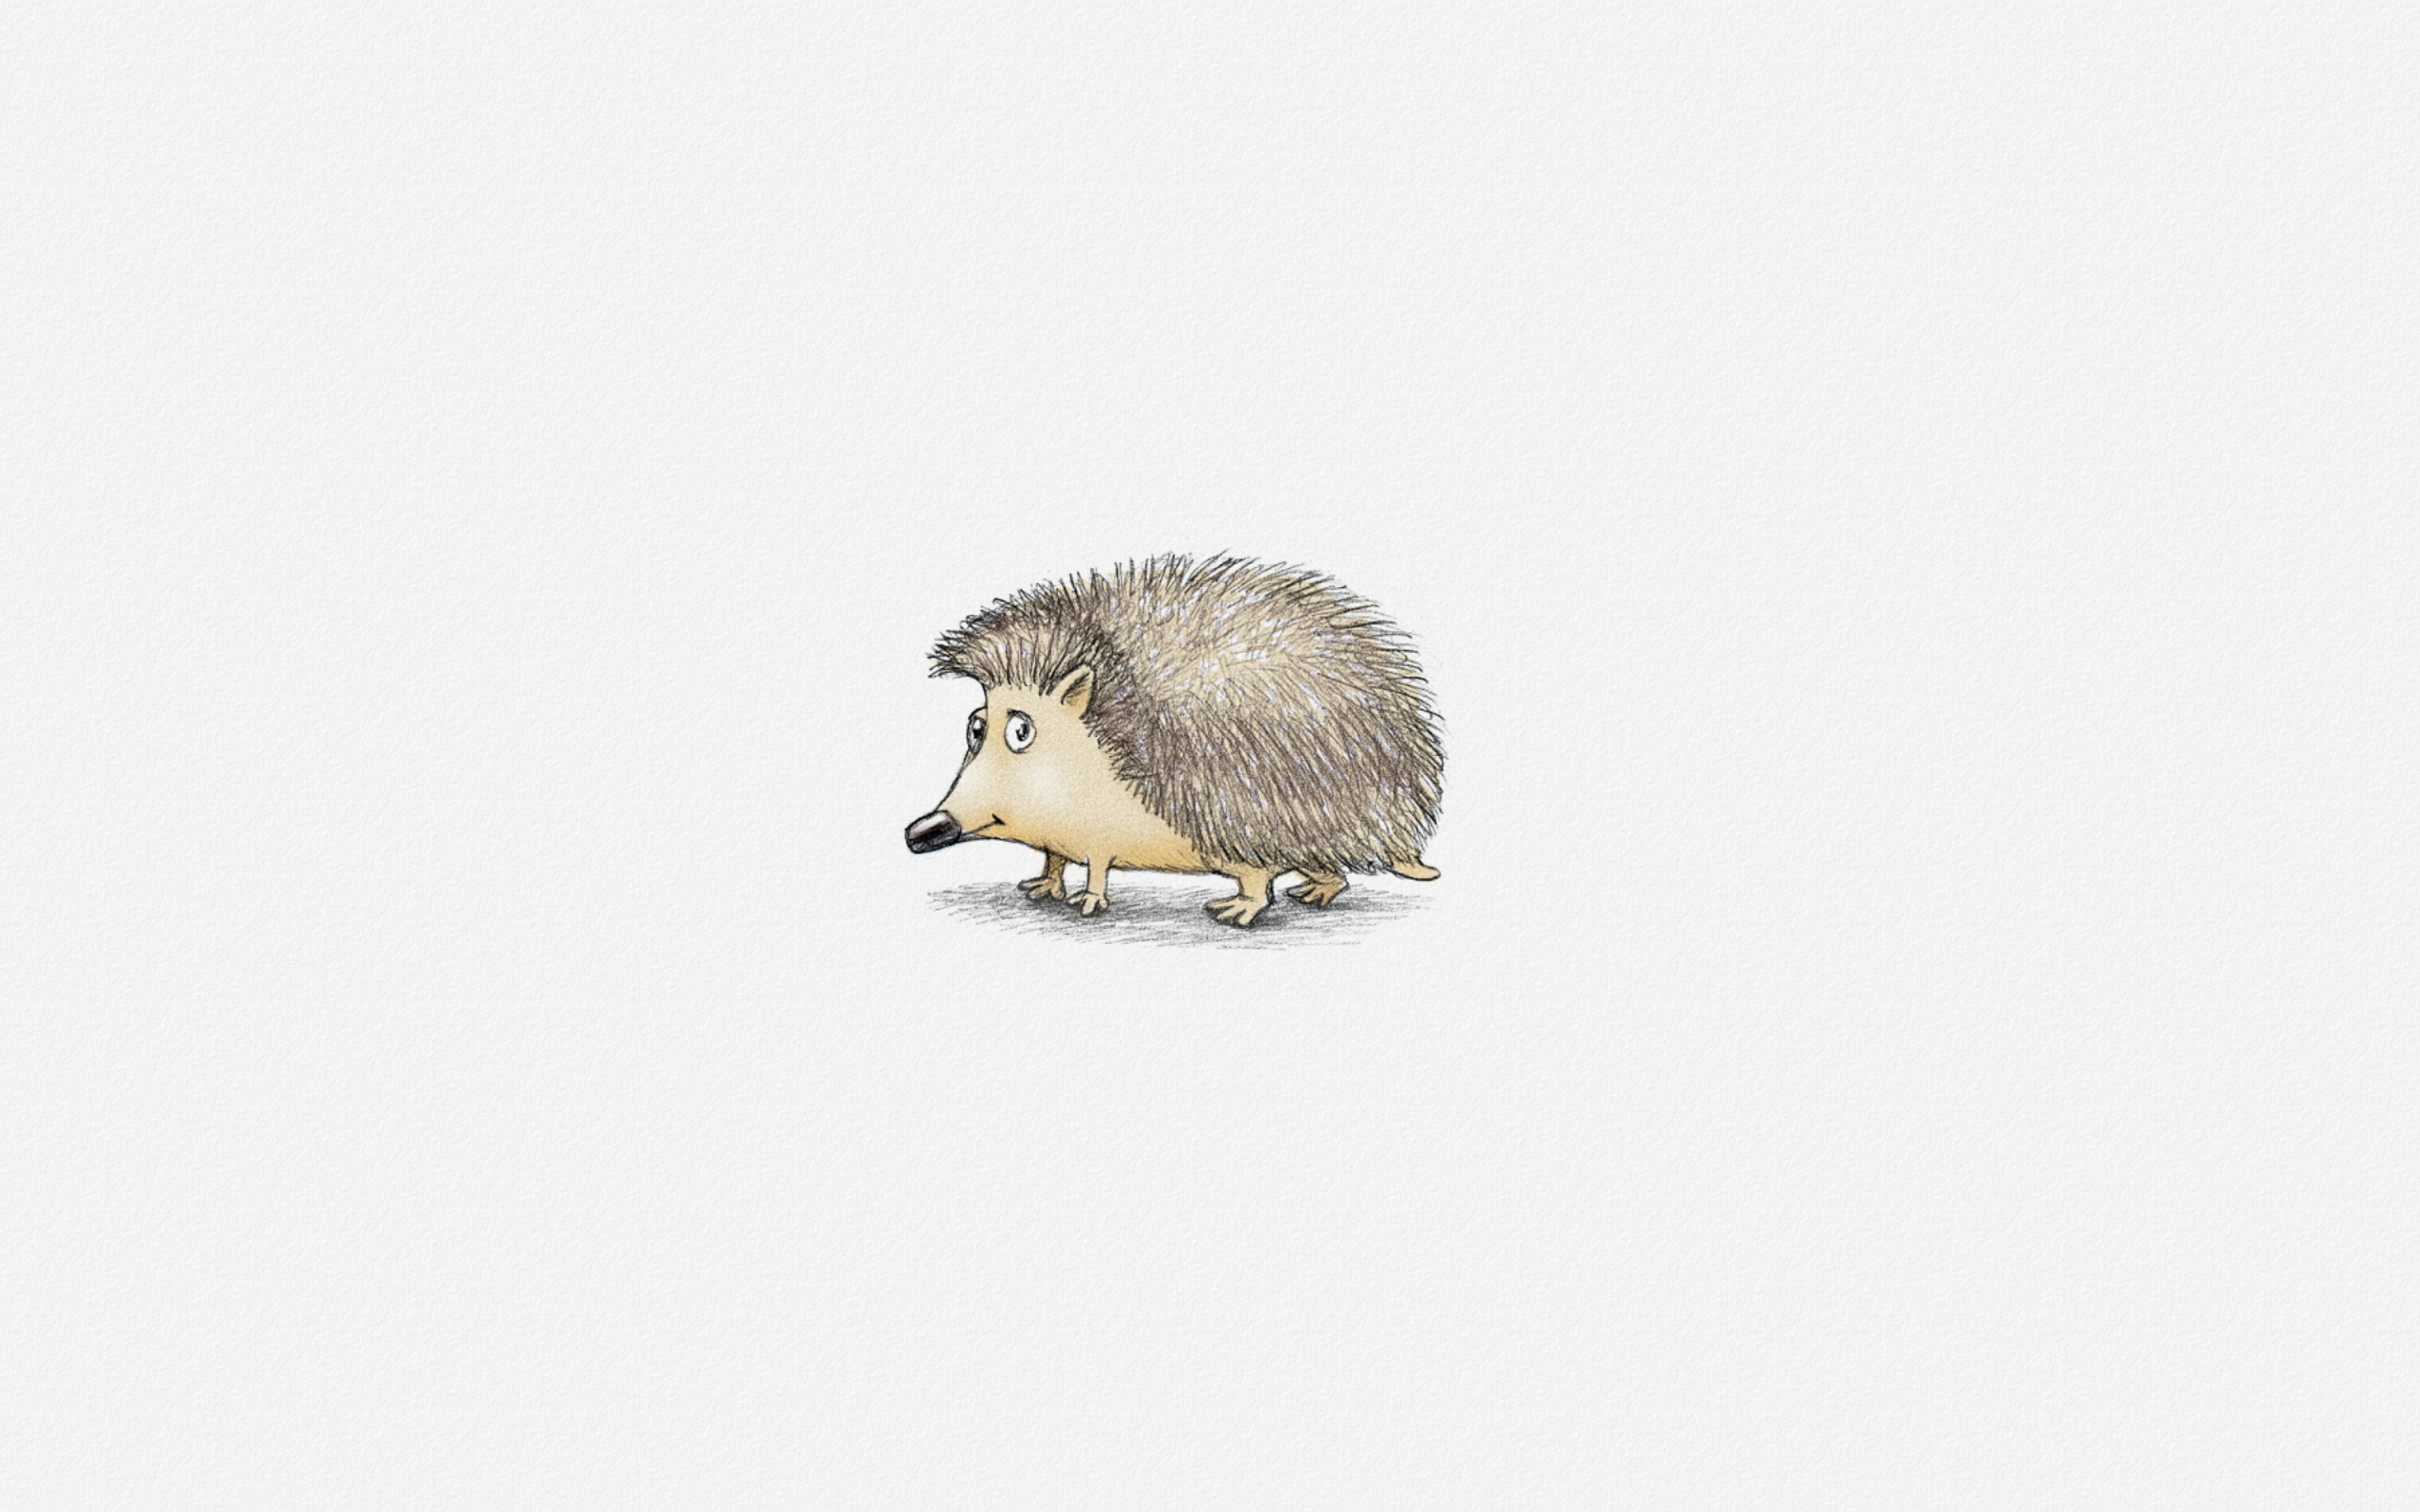 Обои Hedgehog Illustration 2560x1600